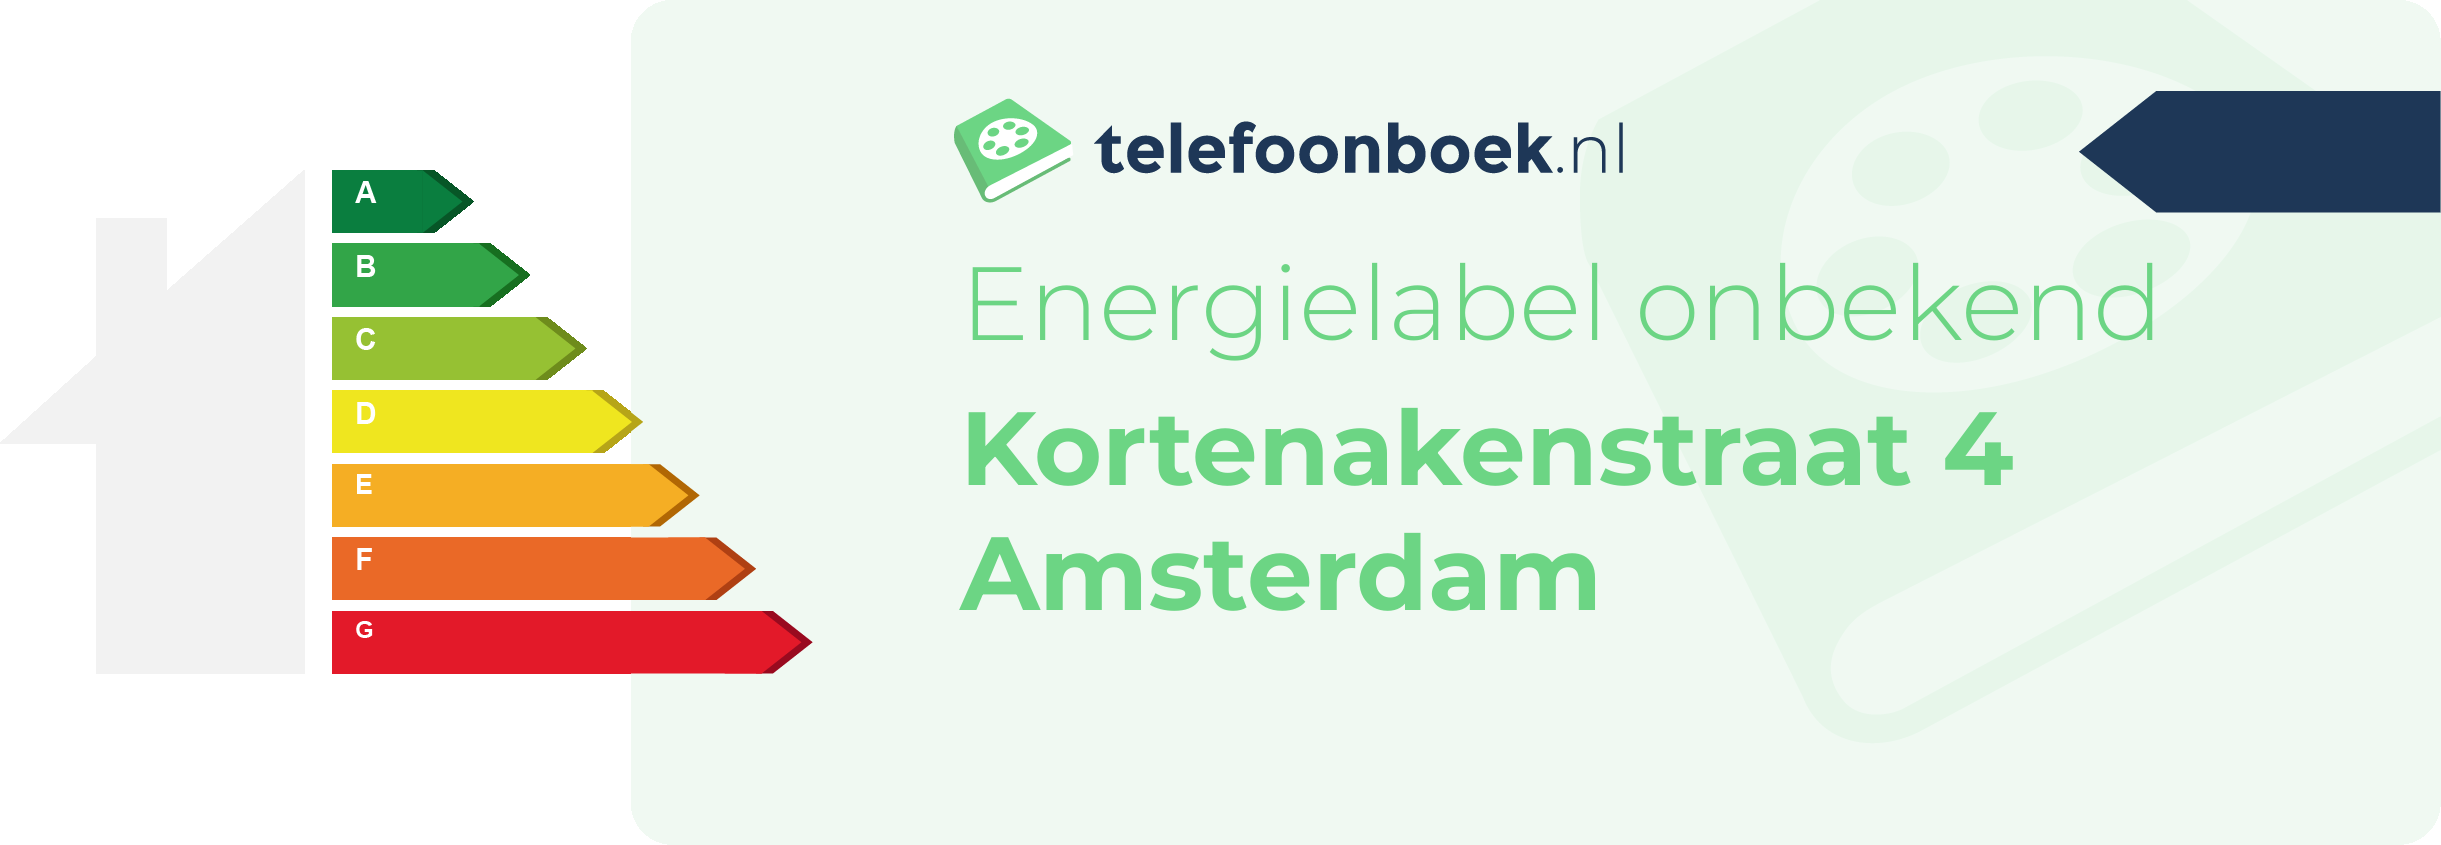 Energielabel Kortenakenstraat 4 Amsterdam